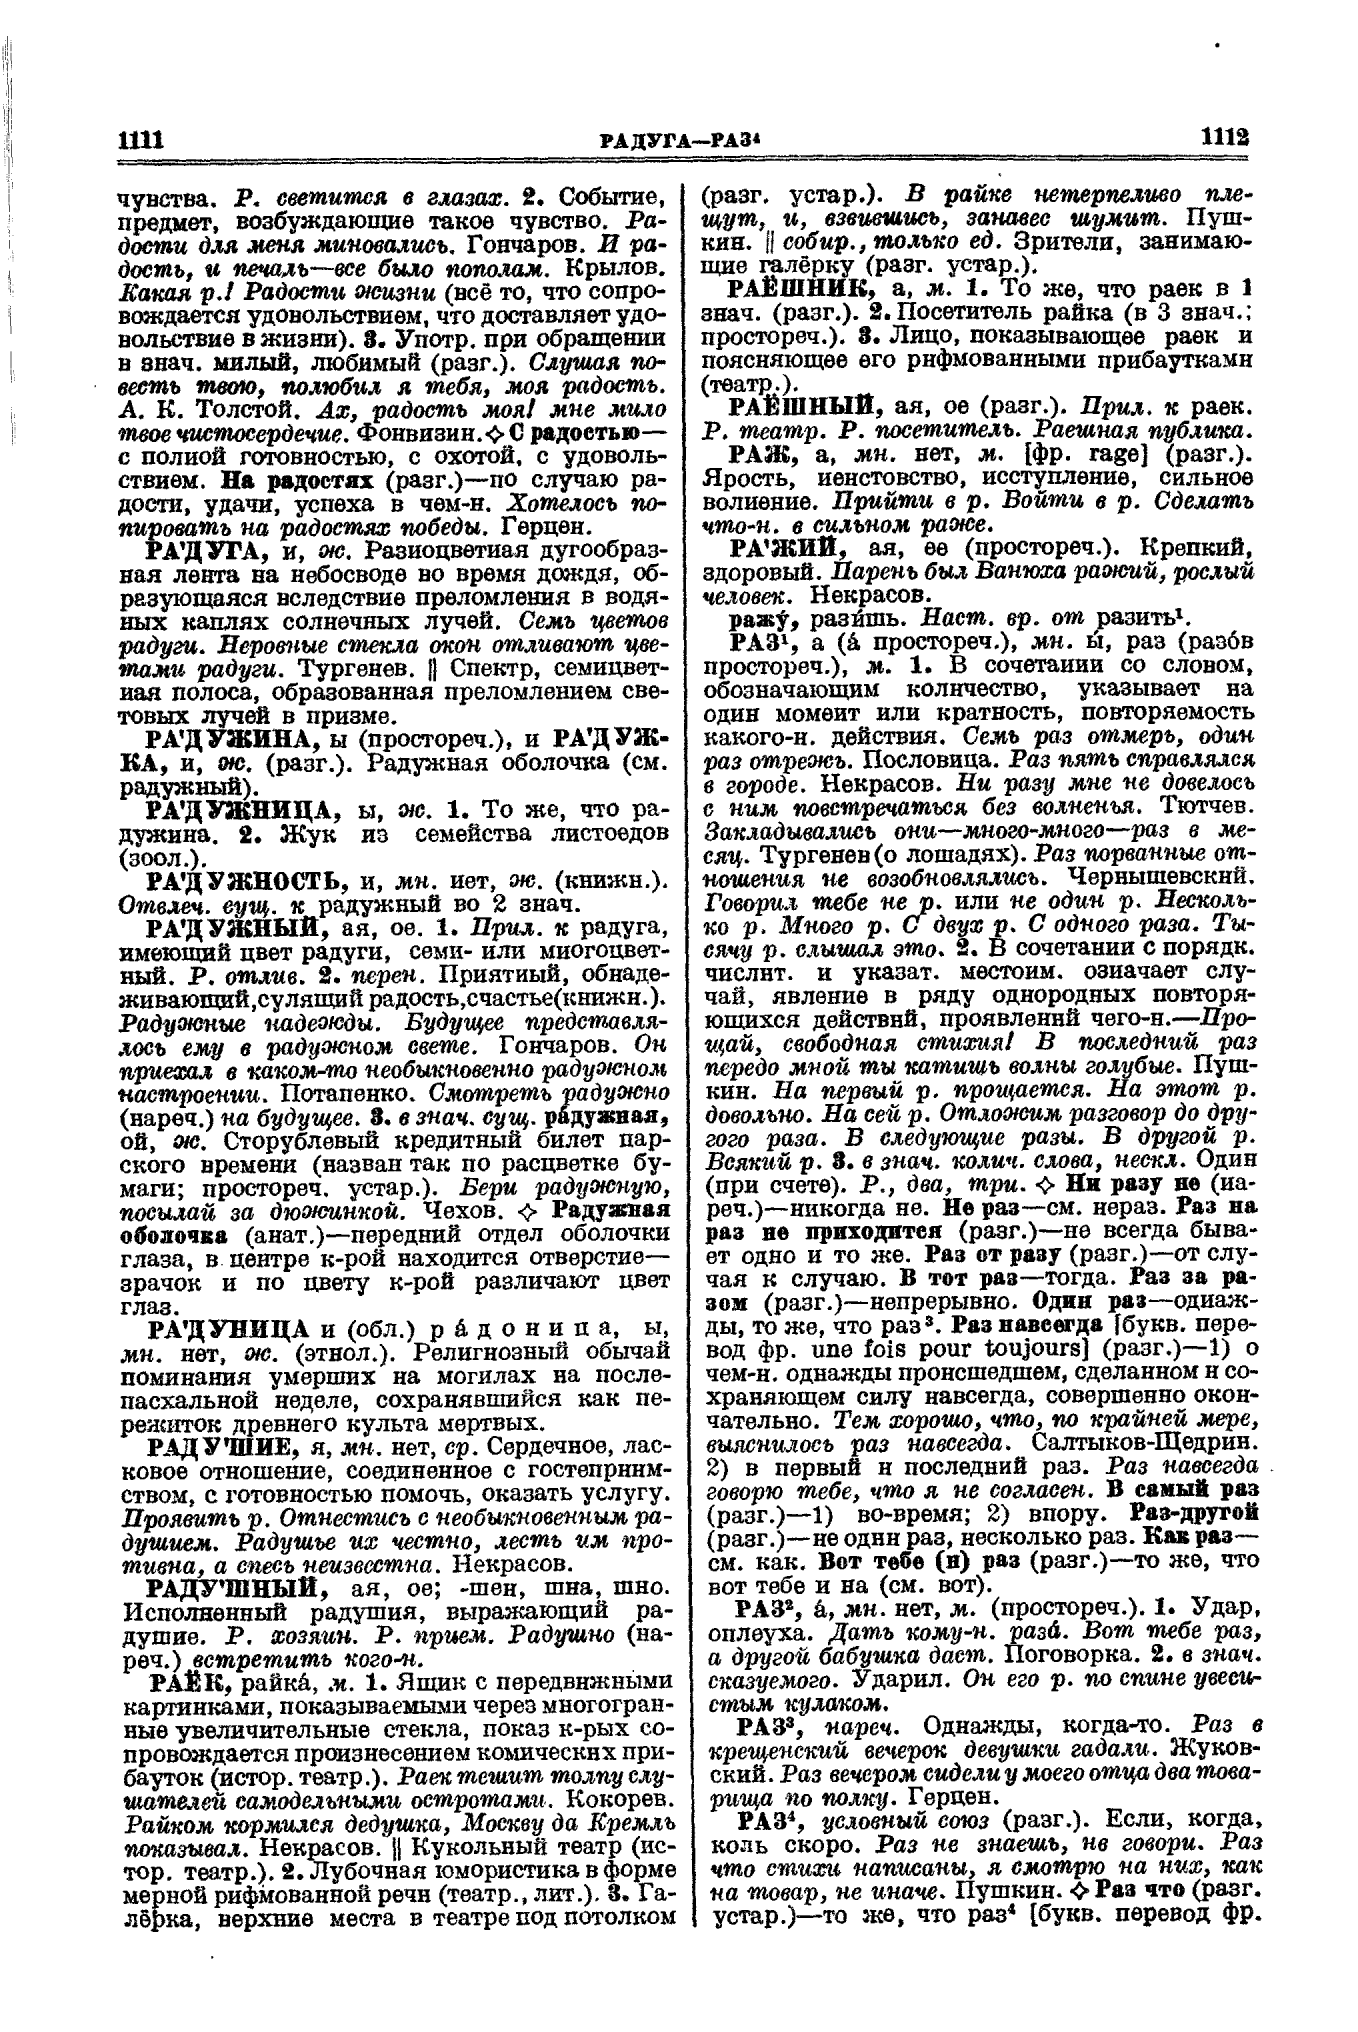 Фотокопия pdf / скан страницы 556 толкового словаря Ушакова (том 3)